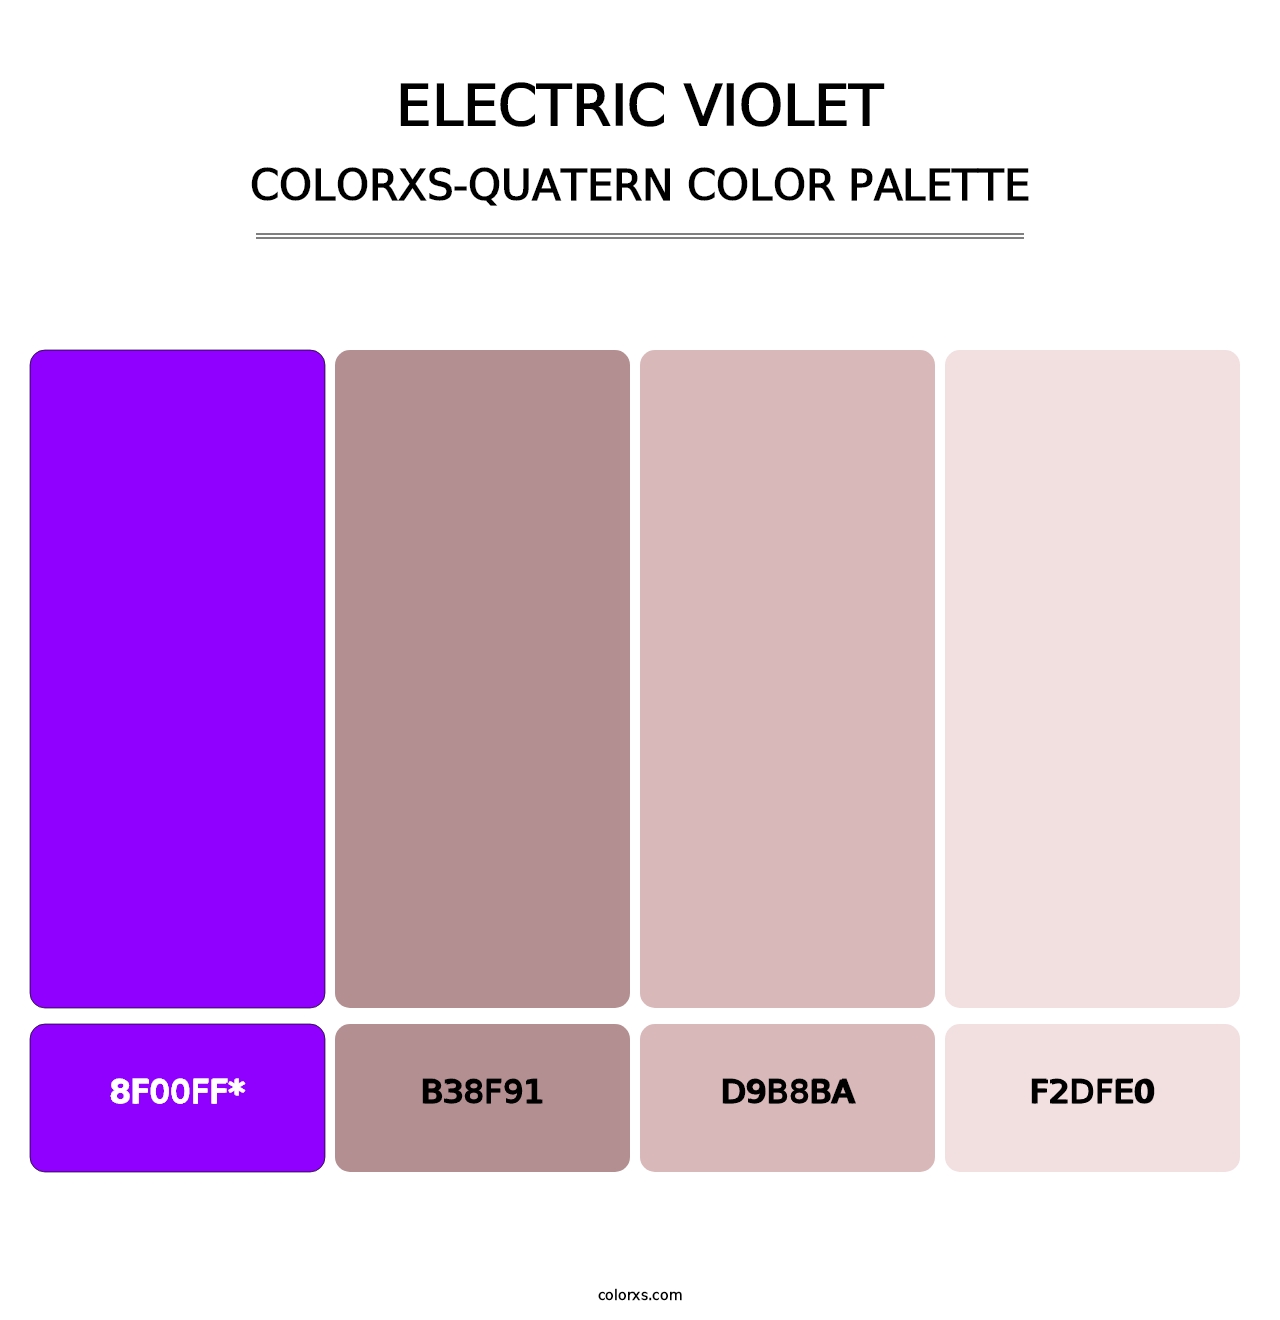 Electric Violet - Colorxs Quatern Palette